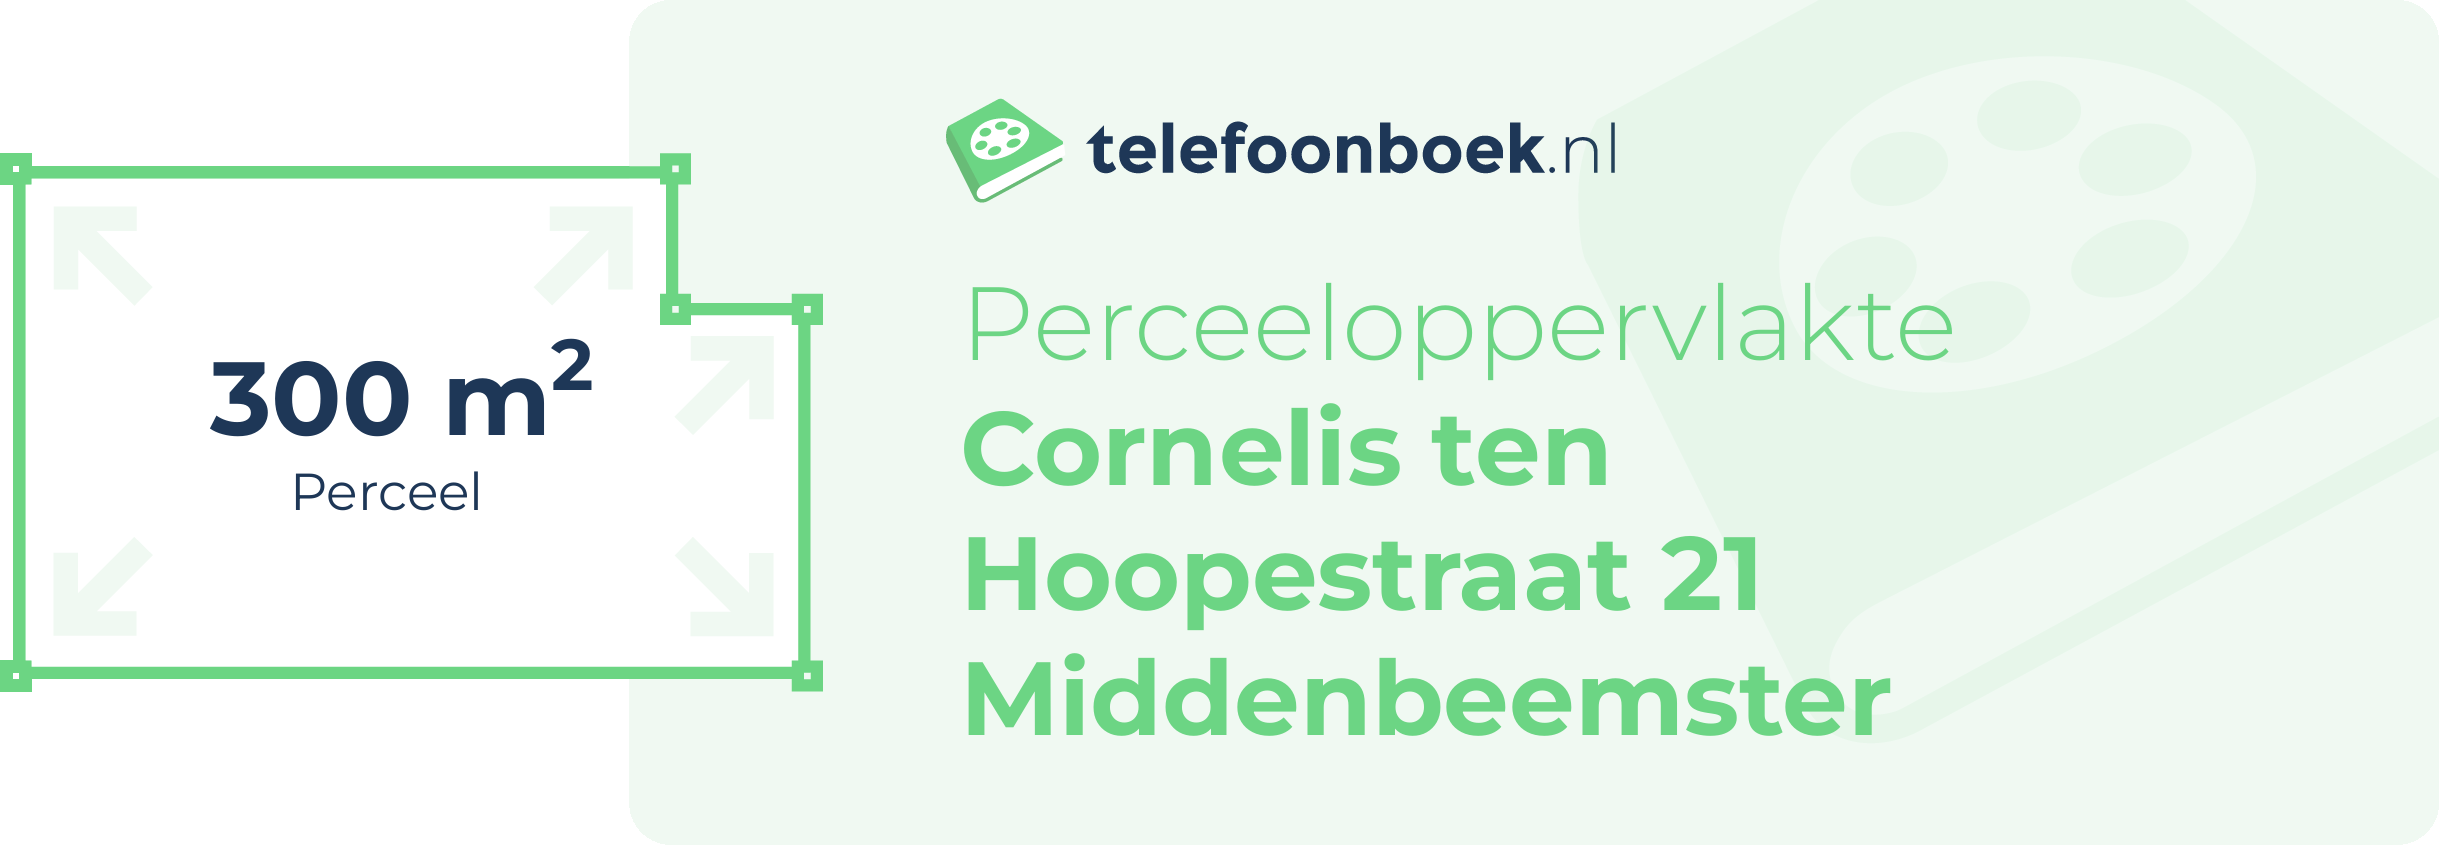 Perceeloppervlakte Cornelis Ten Hoopestraat 21 Middenbeemster